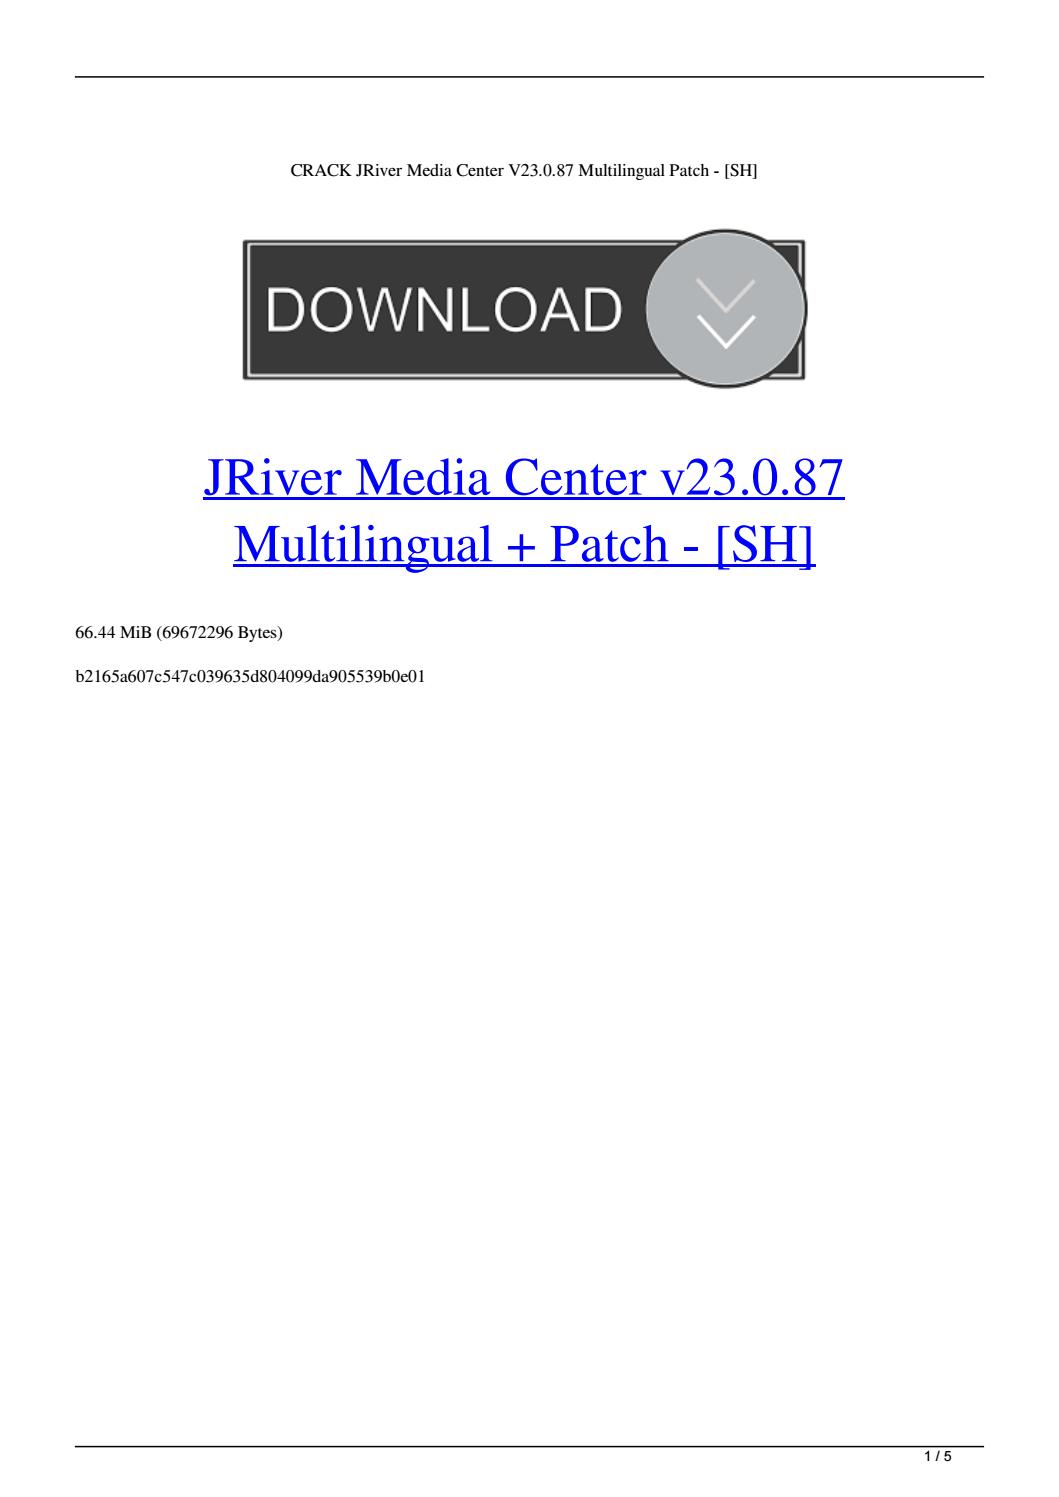 j river media center 23.0.62 torrents